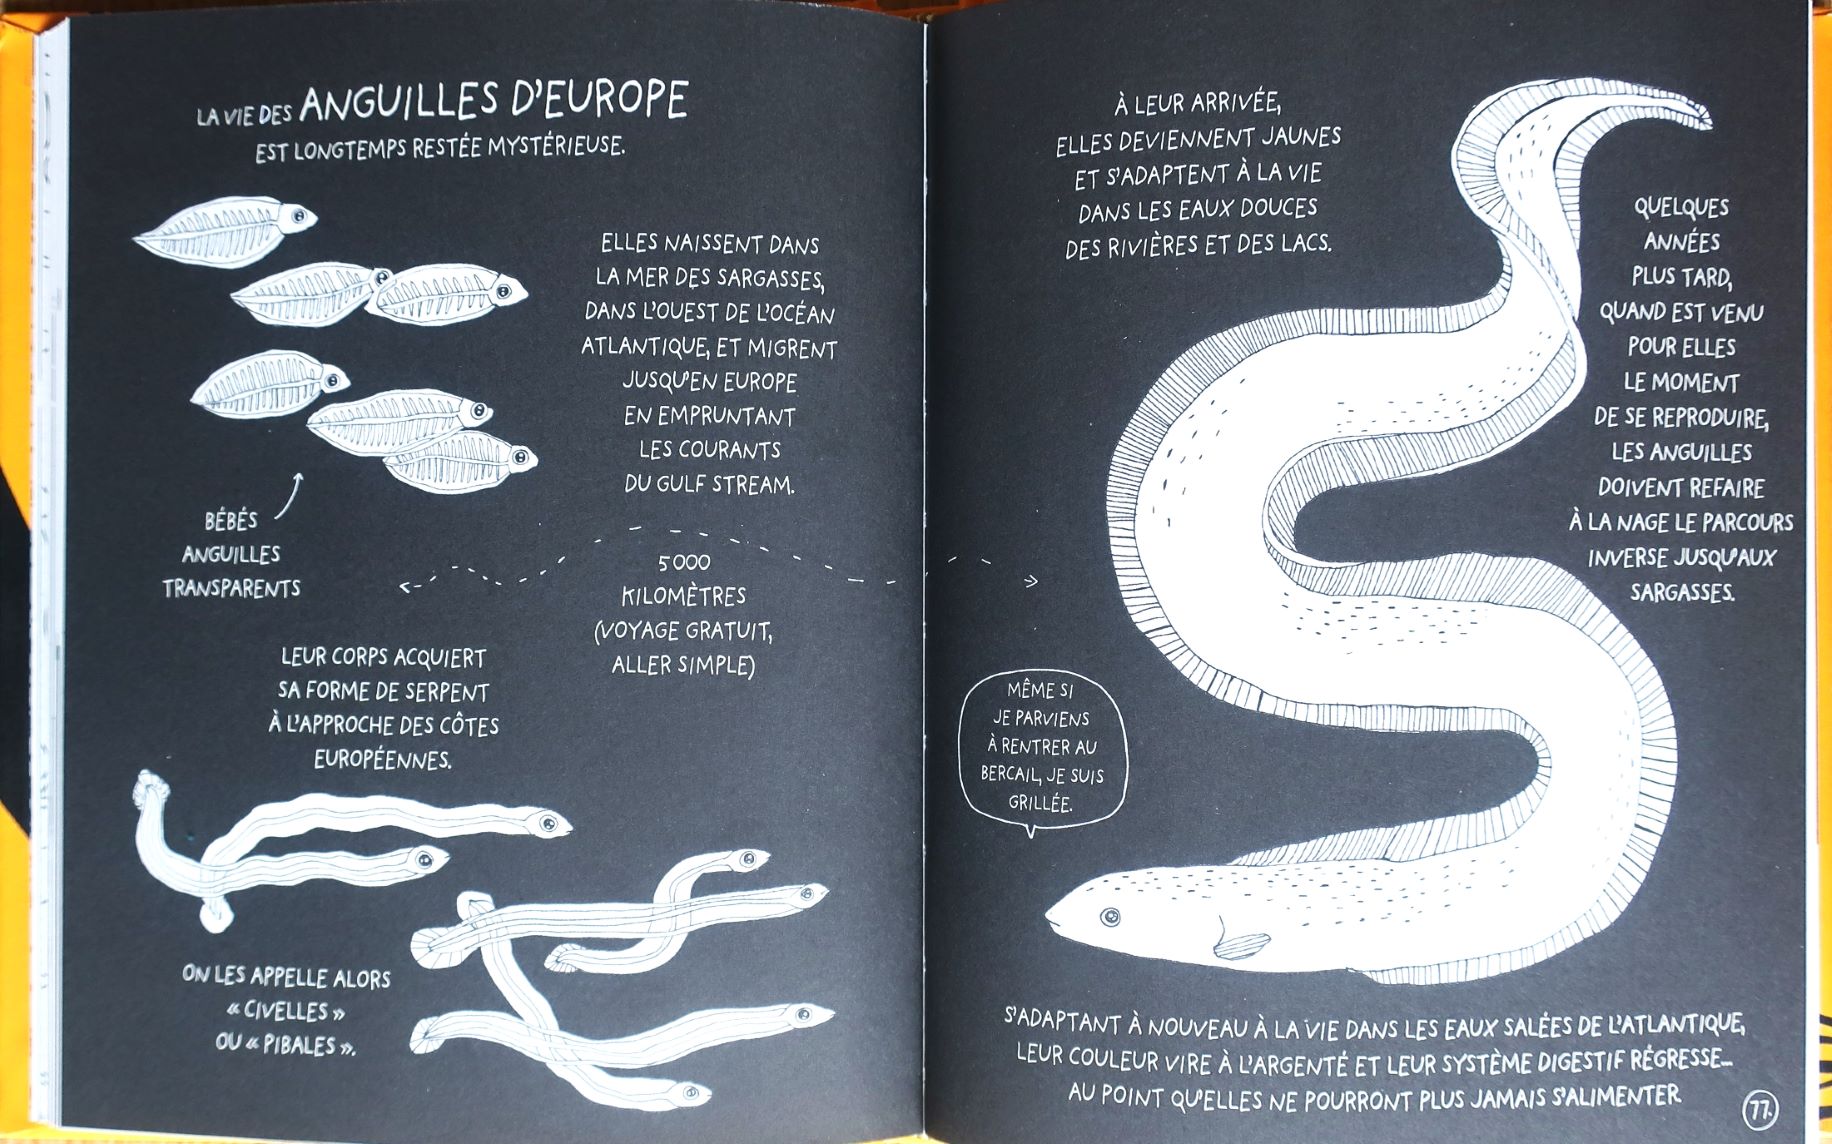 La-petite-encyclopedie-illustree-des-bebes-animaux-vie-des-anguilles